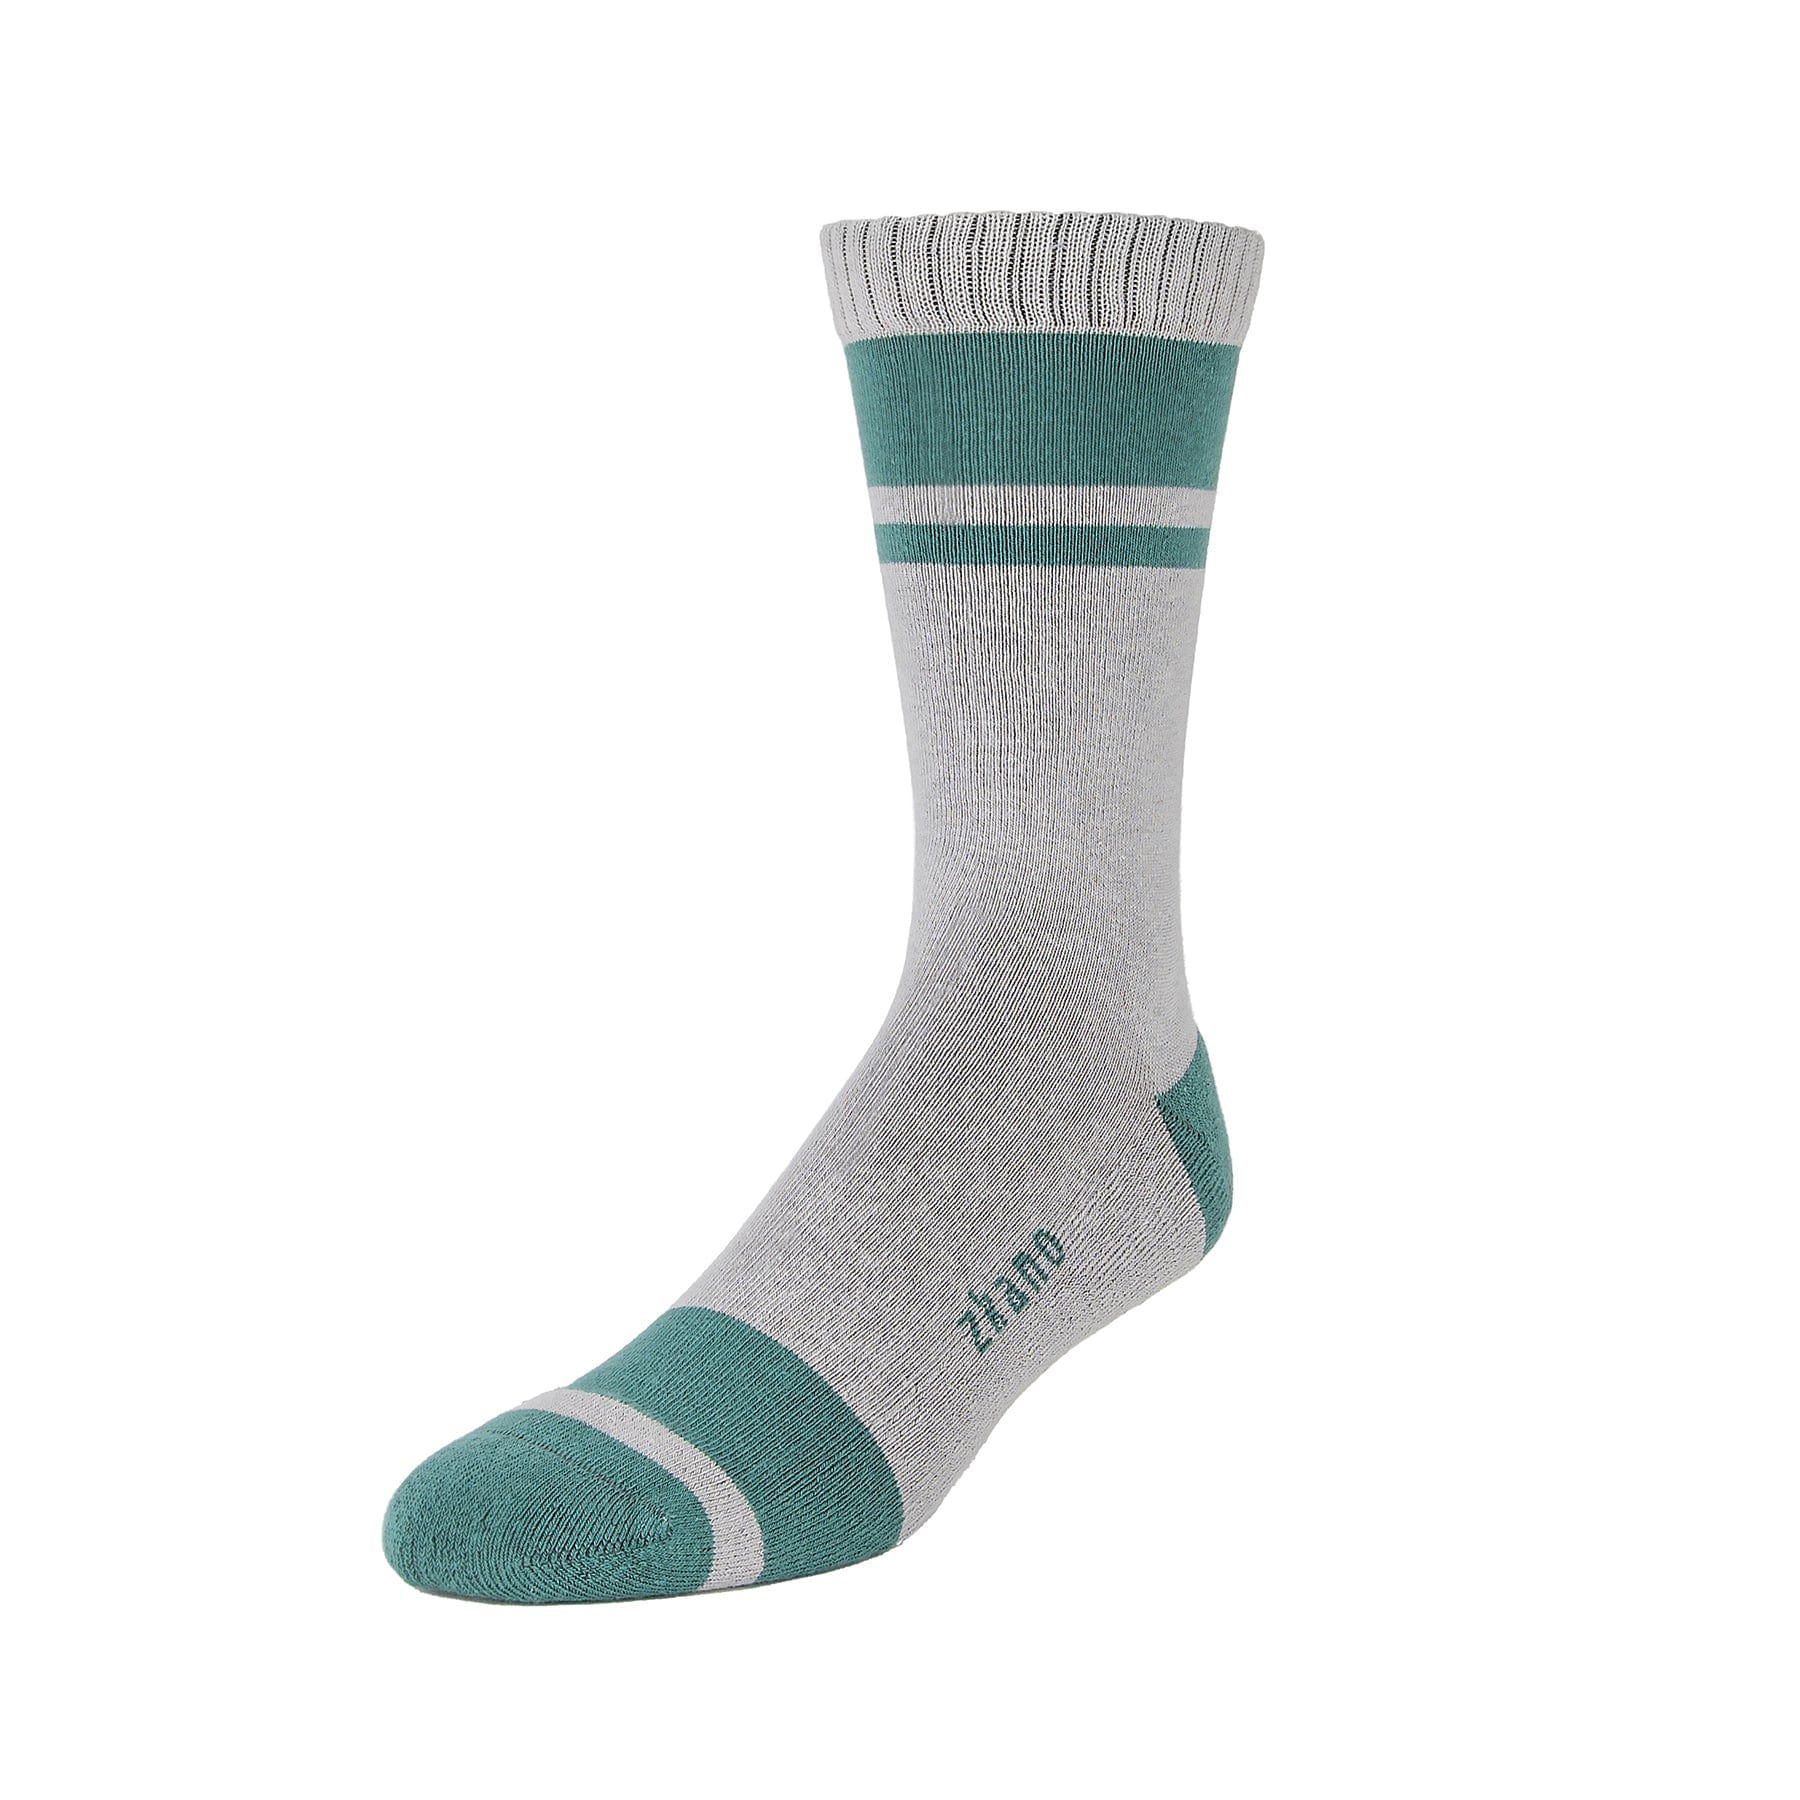 - - – Socks Cotton Fir River Organic zkano Crew socks Cushion Little